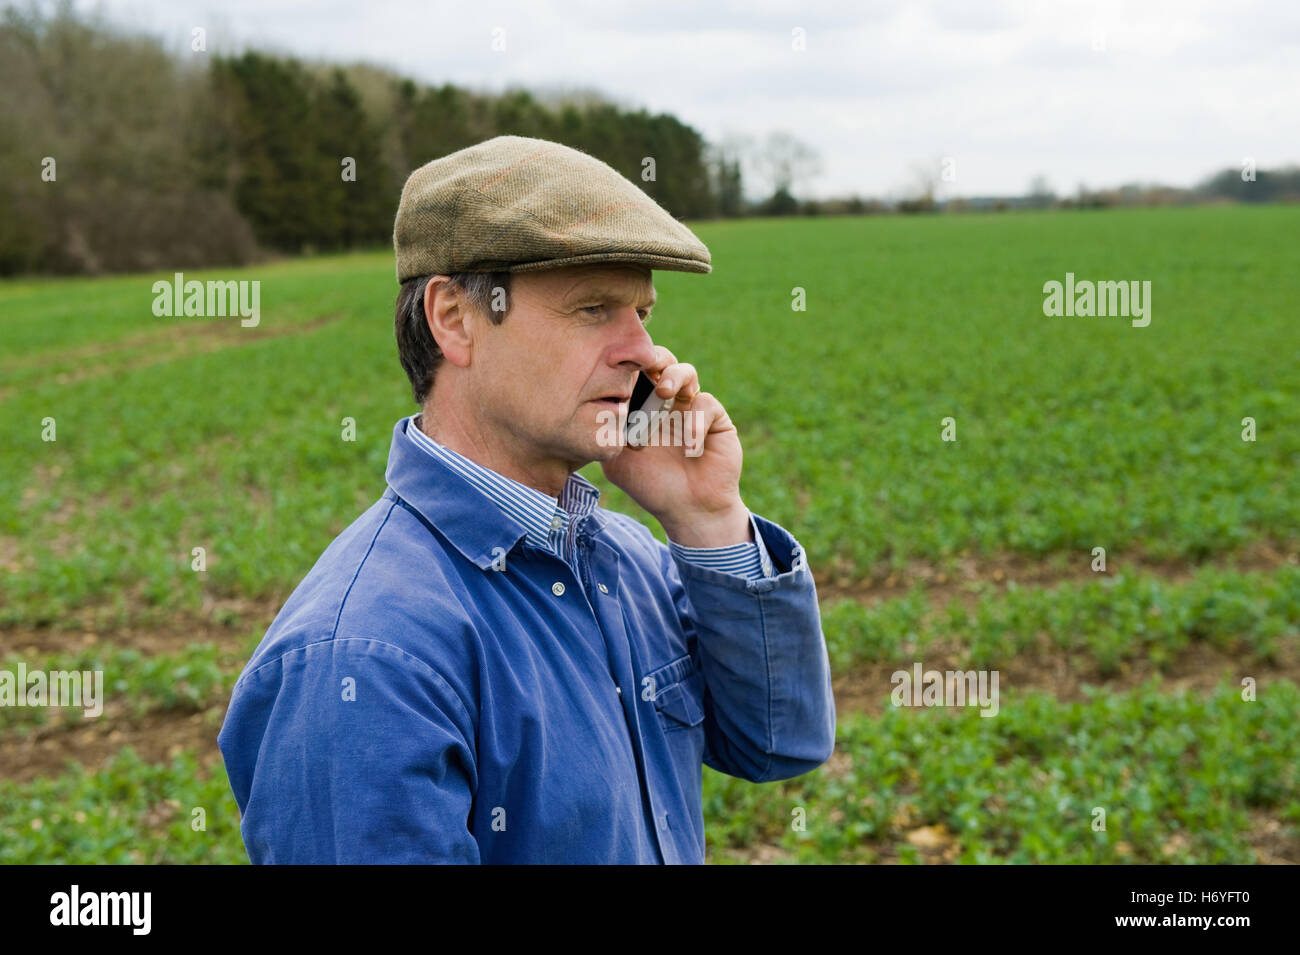 Landwirt mit flache Mütze im Feld am Smartphone sprechen Stockfotografie -  Alamy